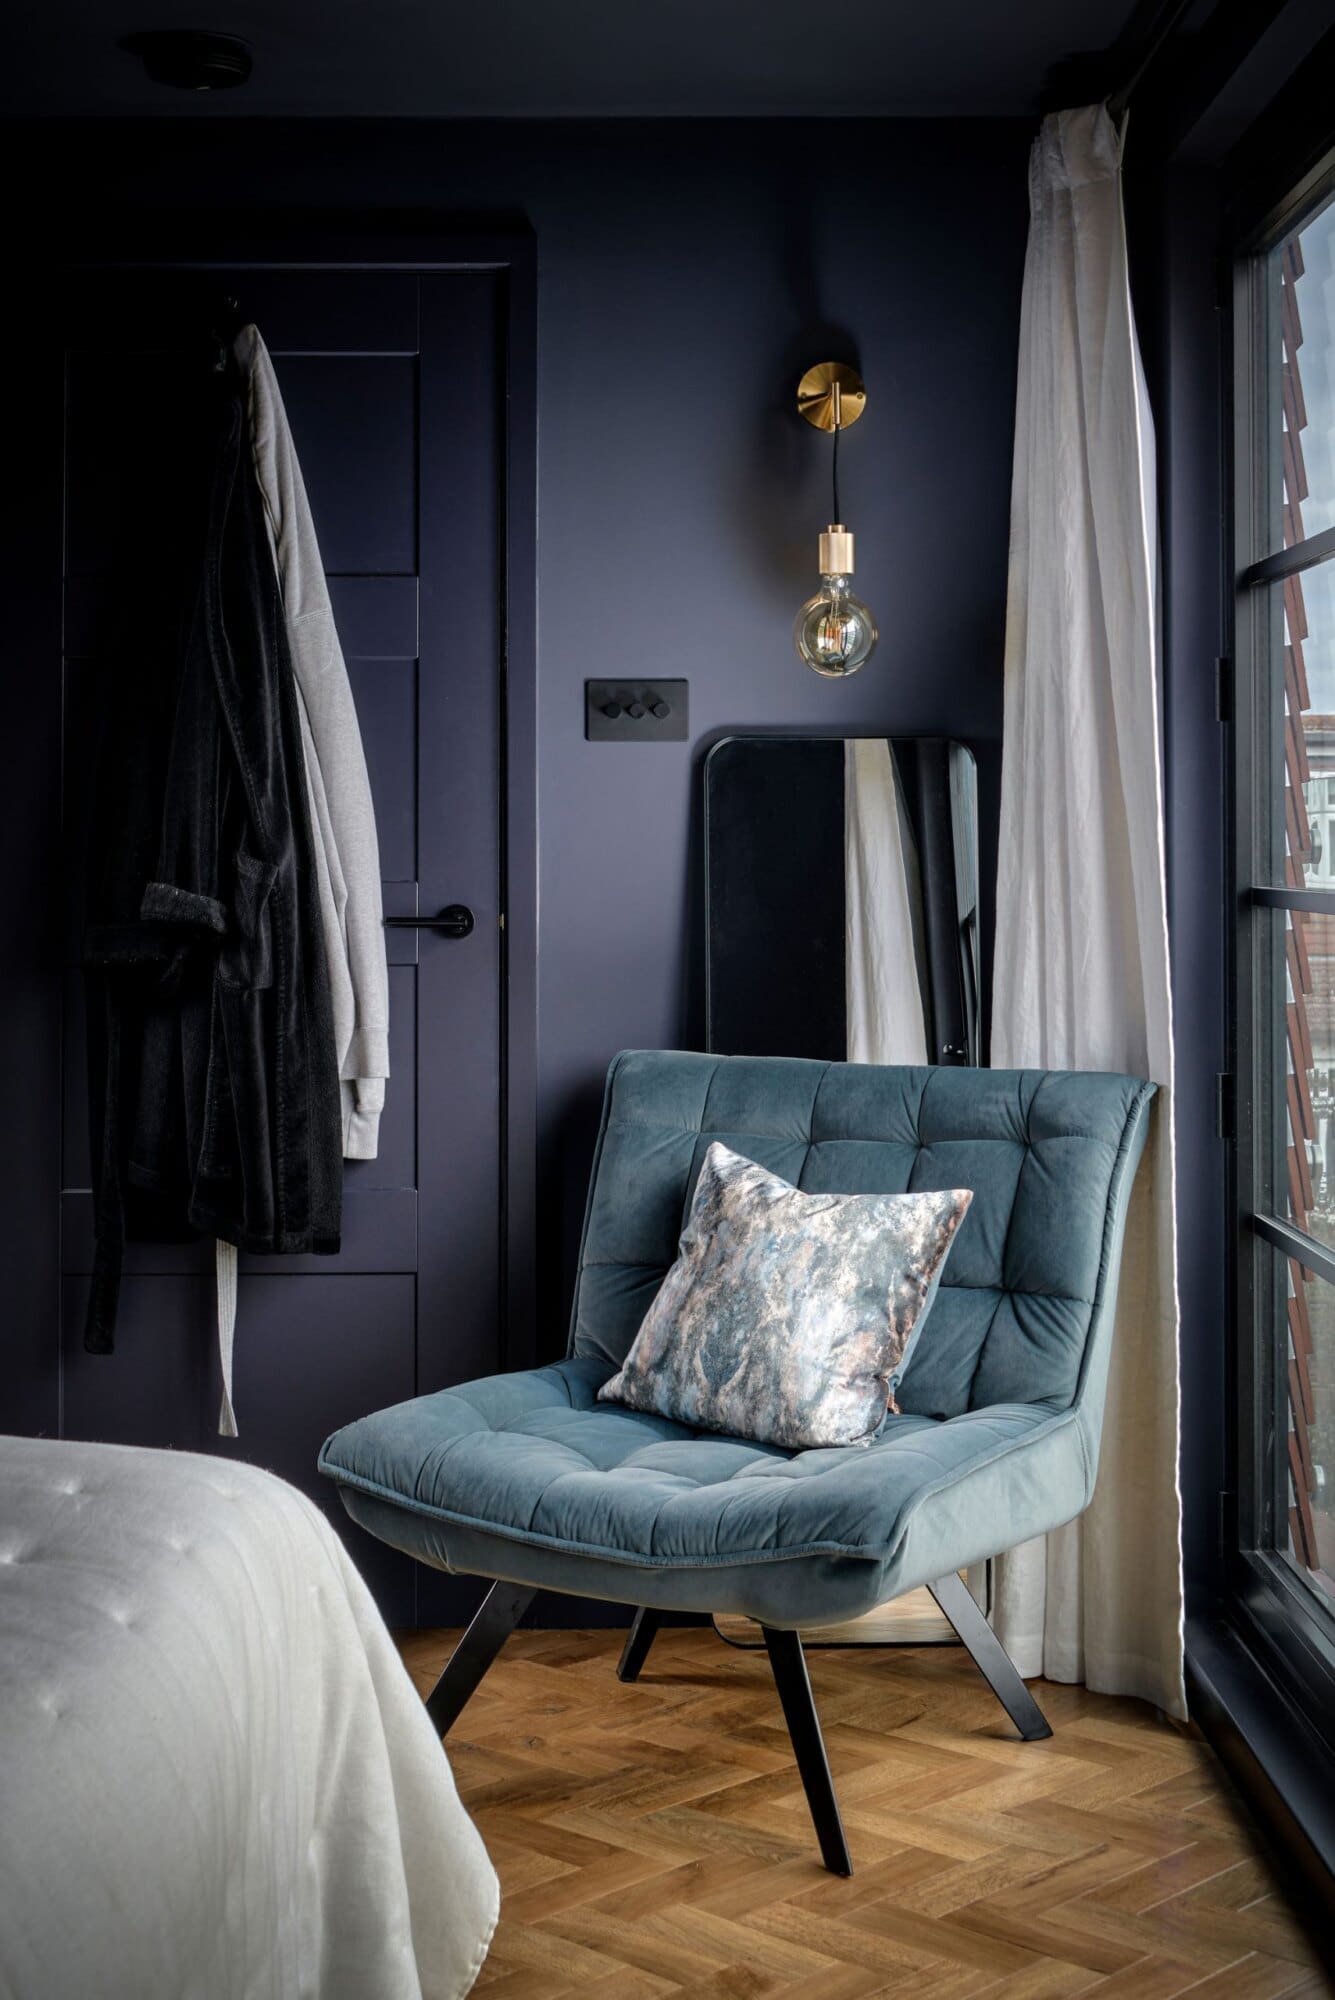 navy chair in corner of bedroom loft conversion